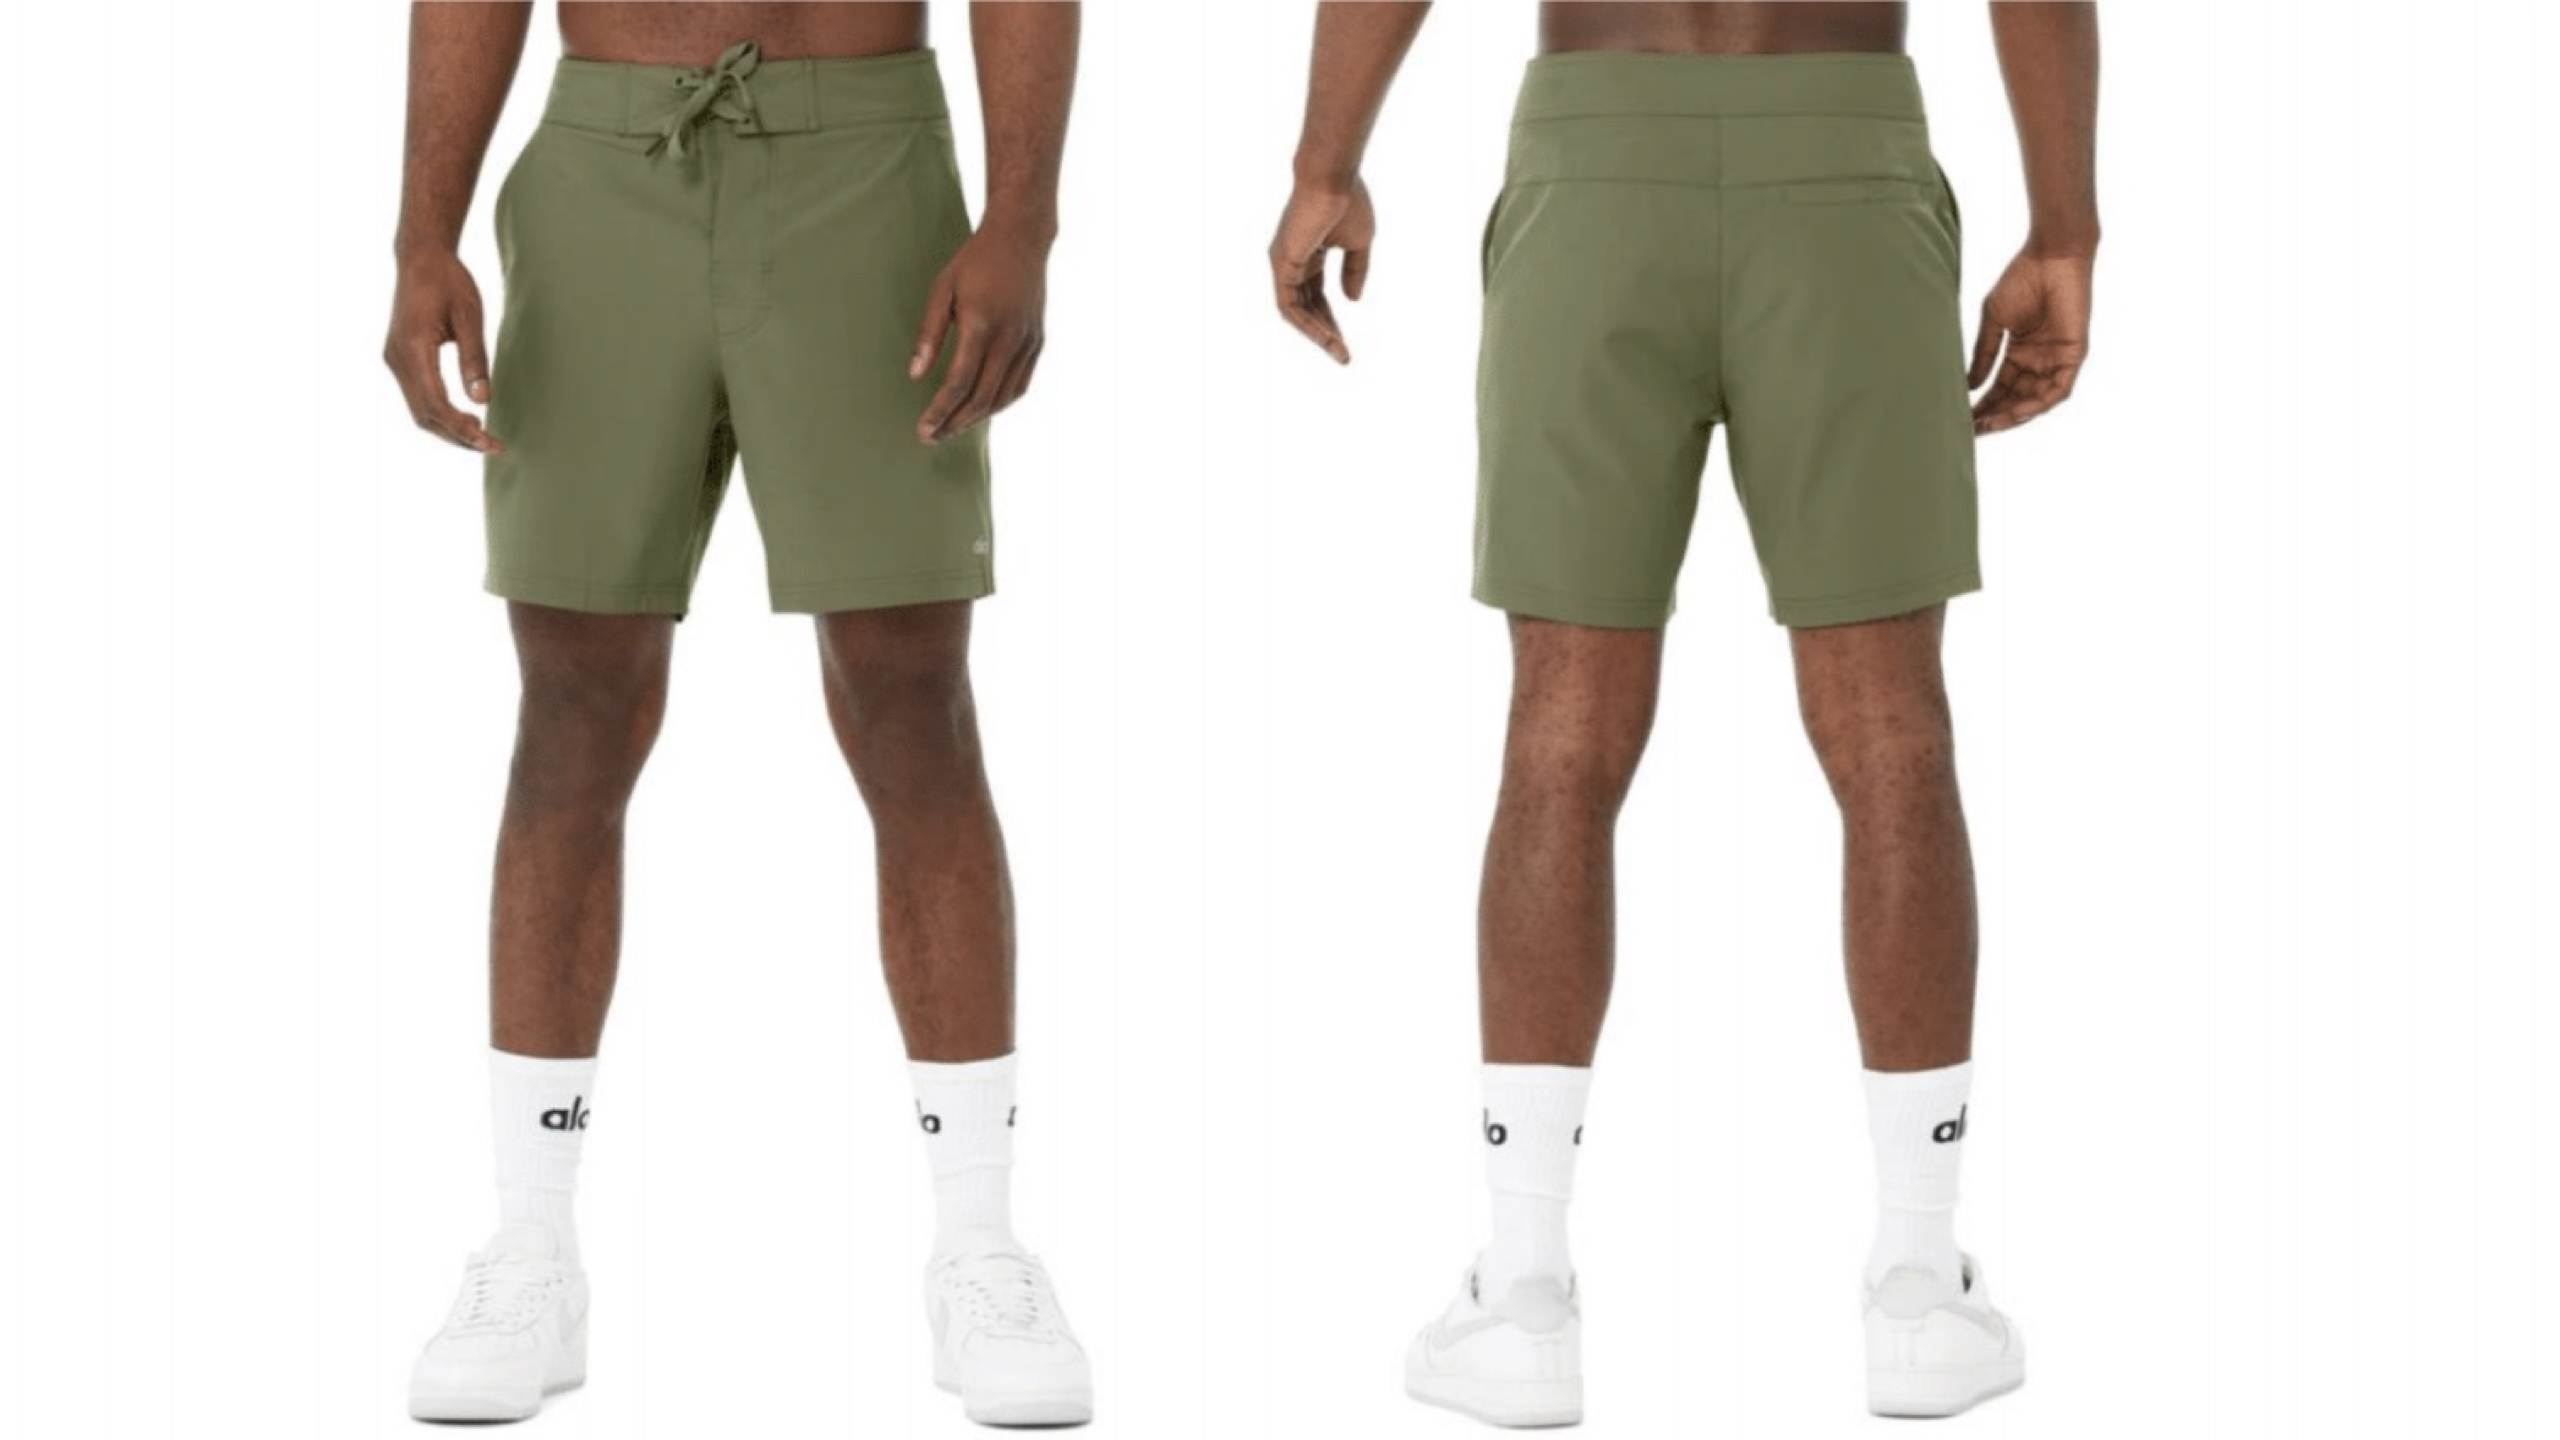 Man in green board shorts